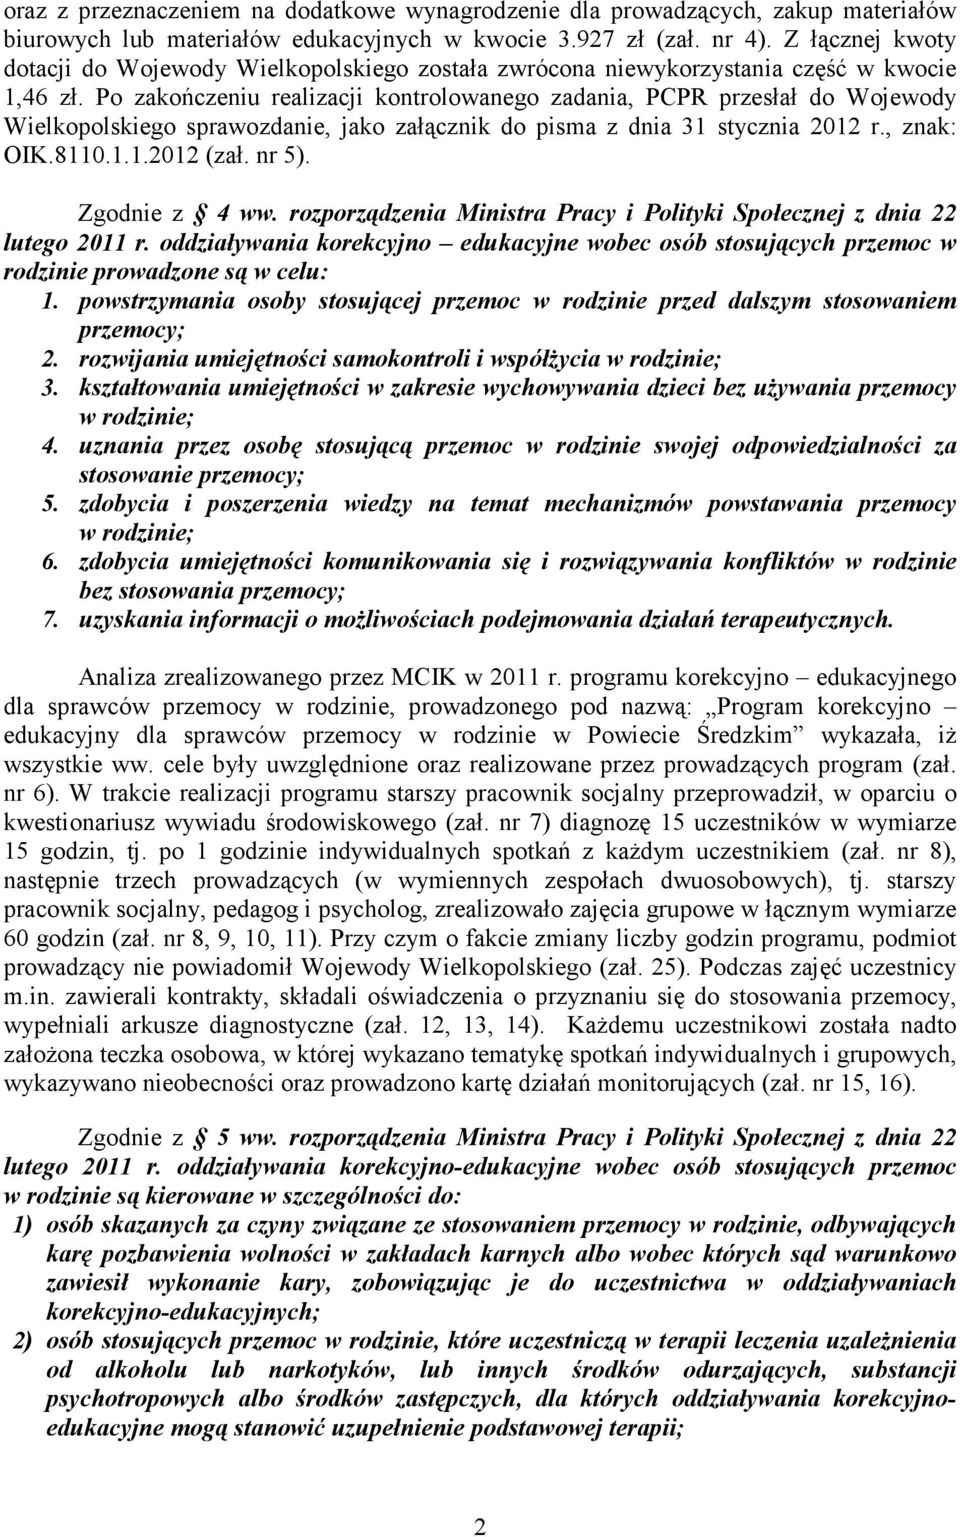 Po zakończeniu realizacji kontrolowanego zadania, PCPR przesłał do Wojewody Wielkopolskiego sprawozdanie, jako załącznik do pisma z dnia 31 stycznia 2012 r., znak: OIK.8110.1.1.2012 (zał. nr 5).